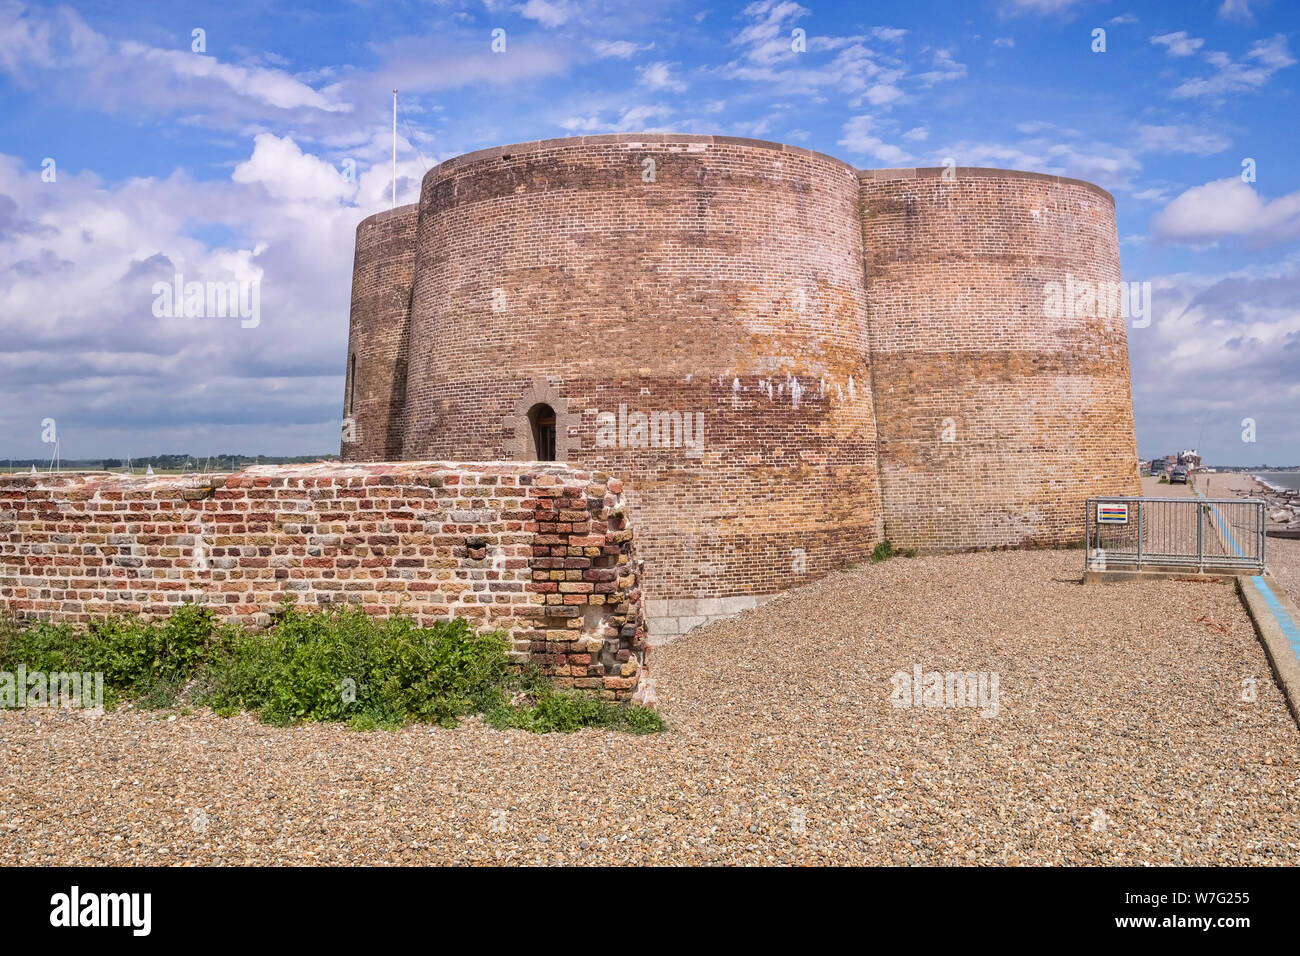 La tour Martello, une structure défensive époque napoléonienne à Aldeburgh, Suffolk, Angleterre, Royaume-Uni. Banque D'Images